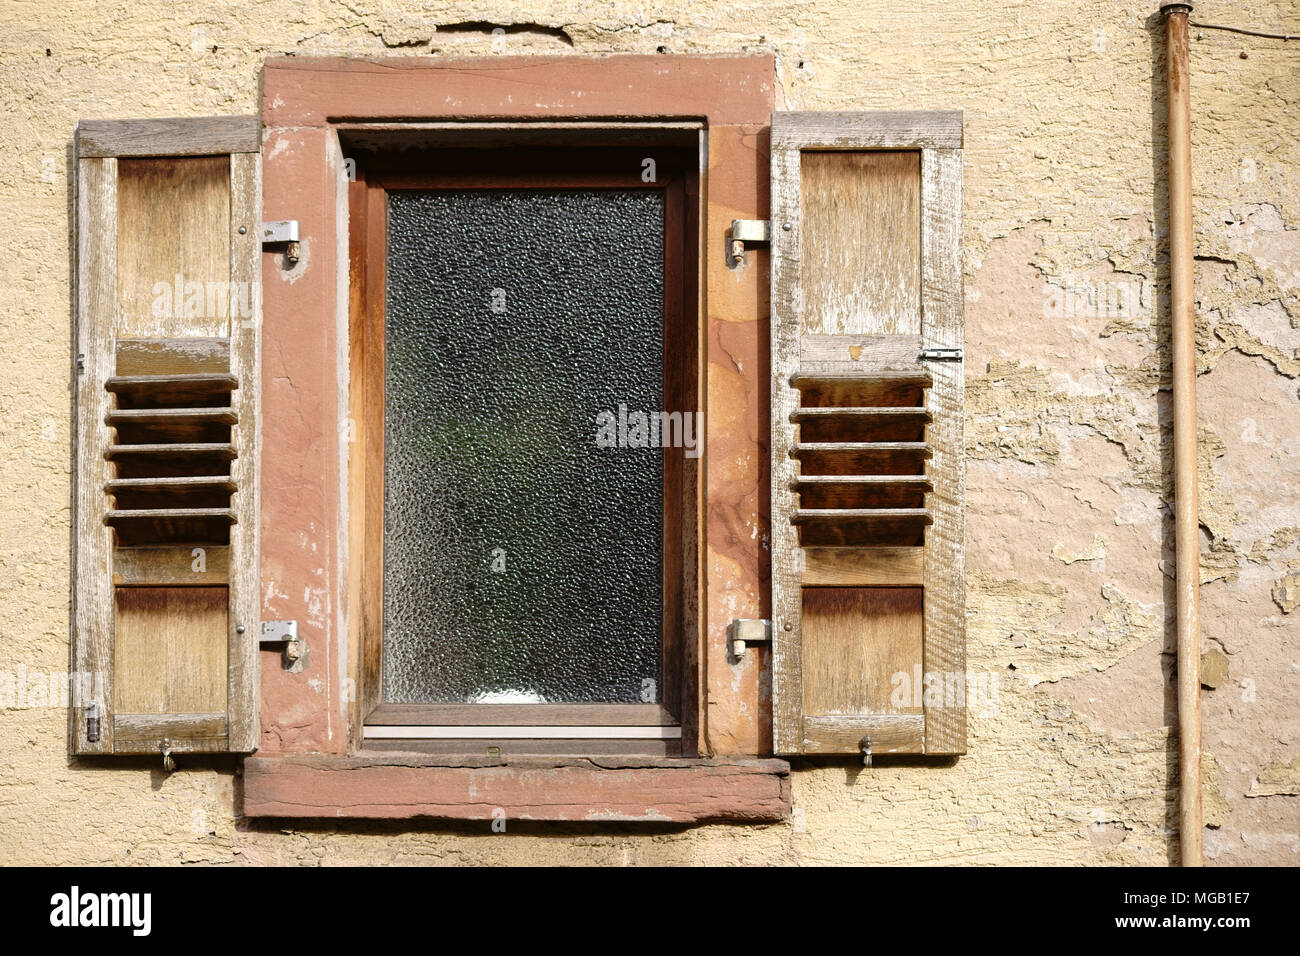 Ein heruntergekommenes Wohnhaus mit einem verblichenen Fassade und abblätternde Farbe Schichten sowie Putz auf die Fenster und Fensterläden. Stockfoto